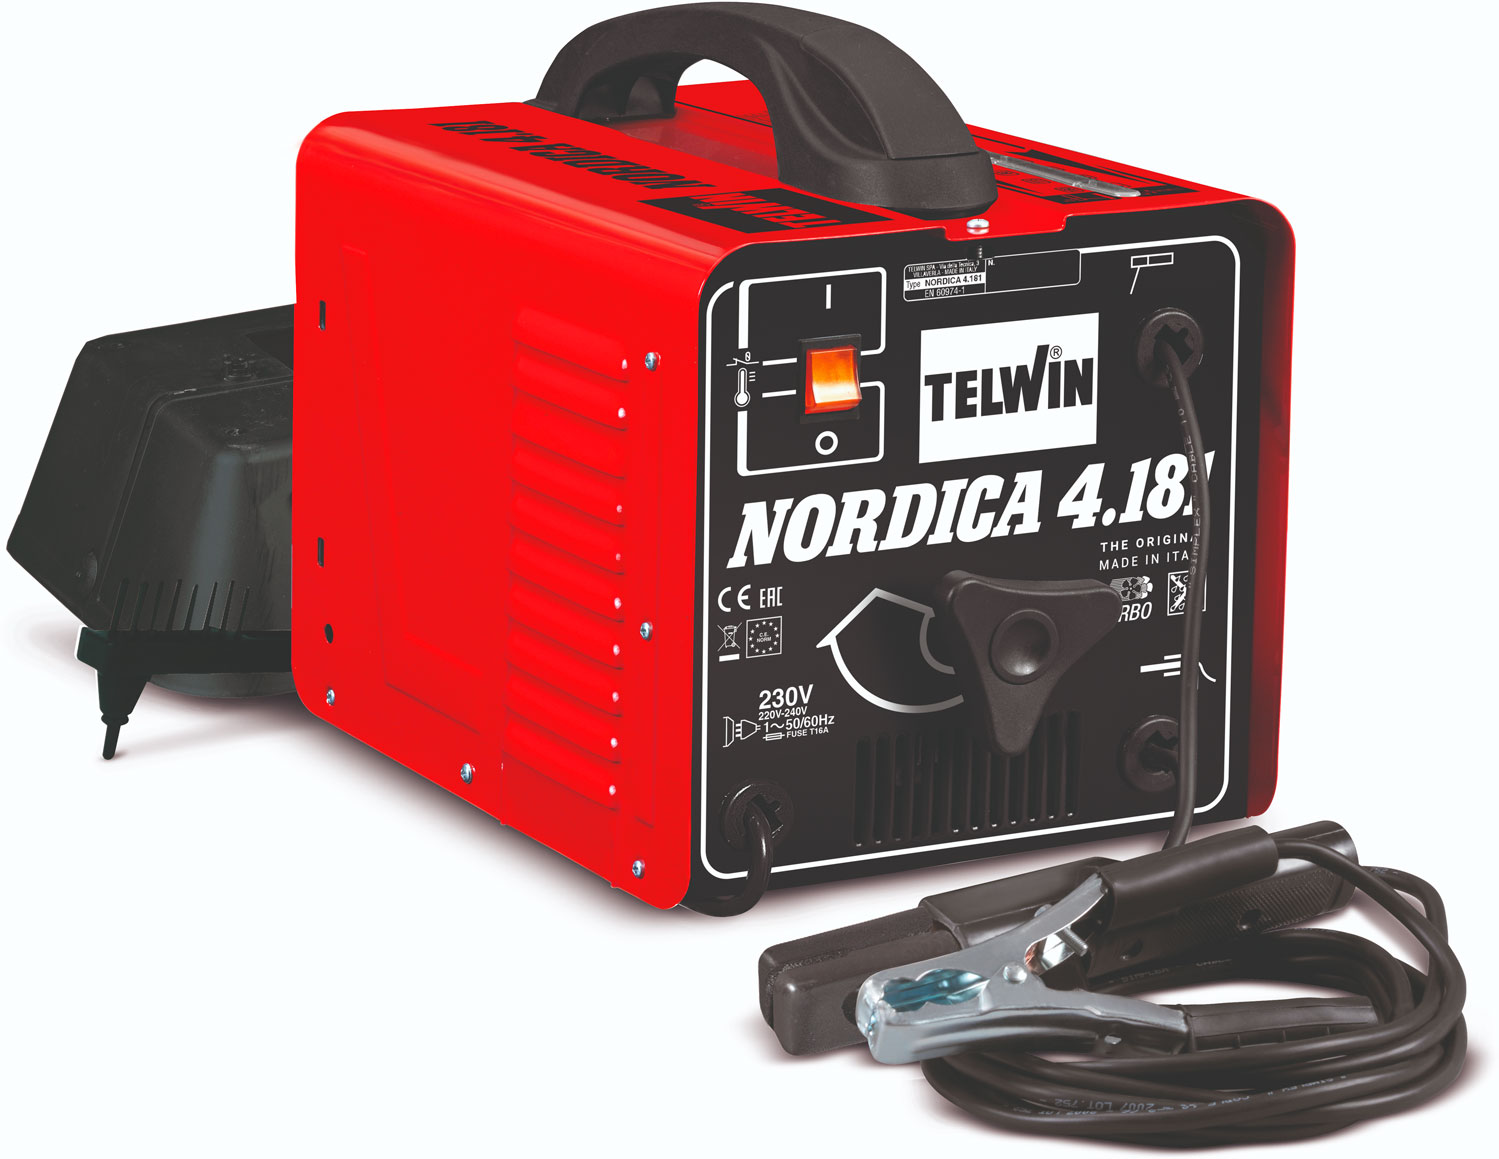 Telwin NORDICA 4.181 TURBO 230V ACD